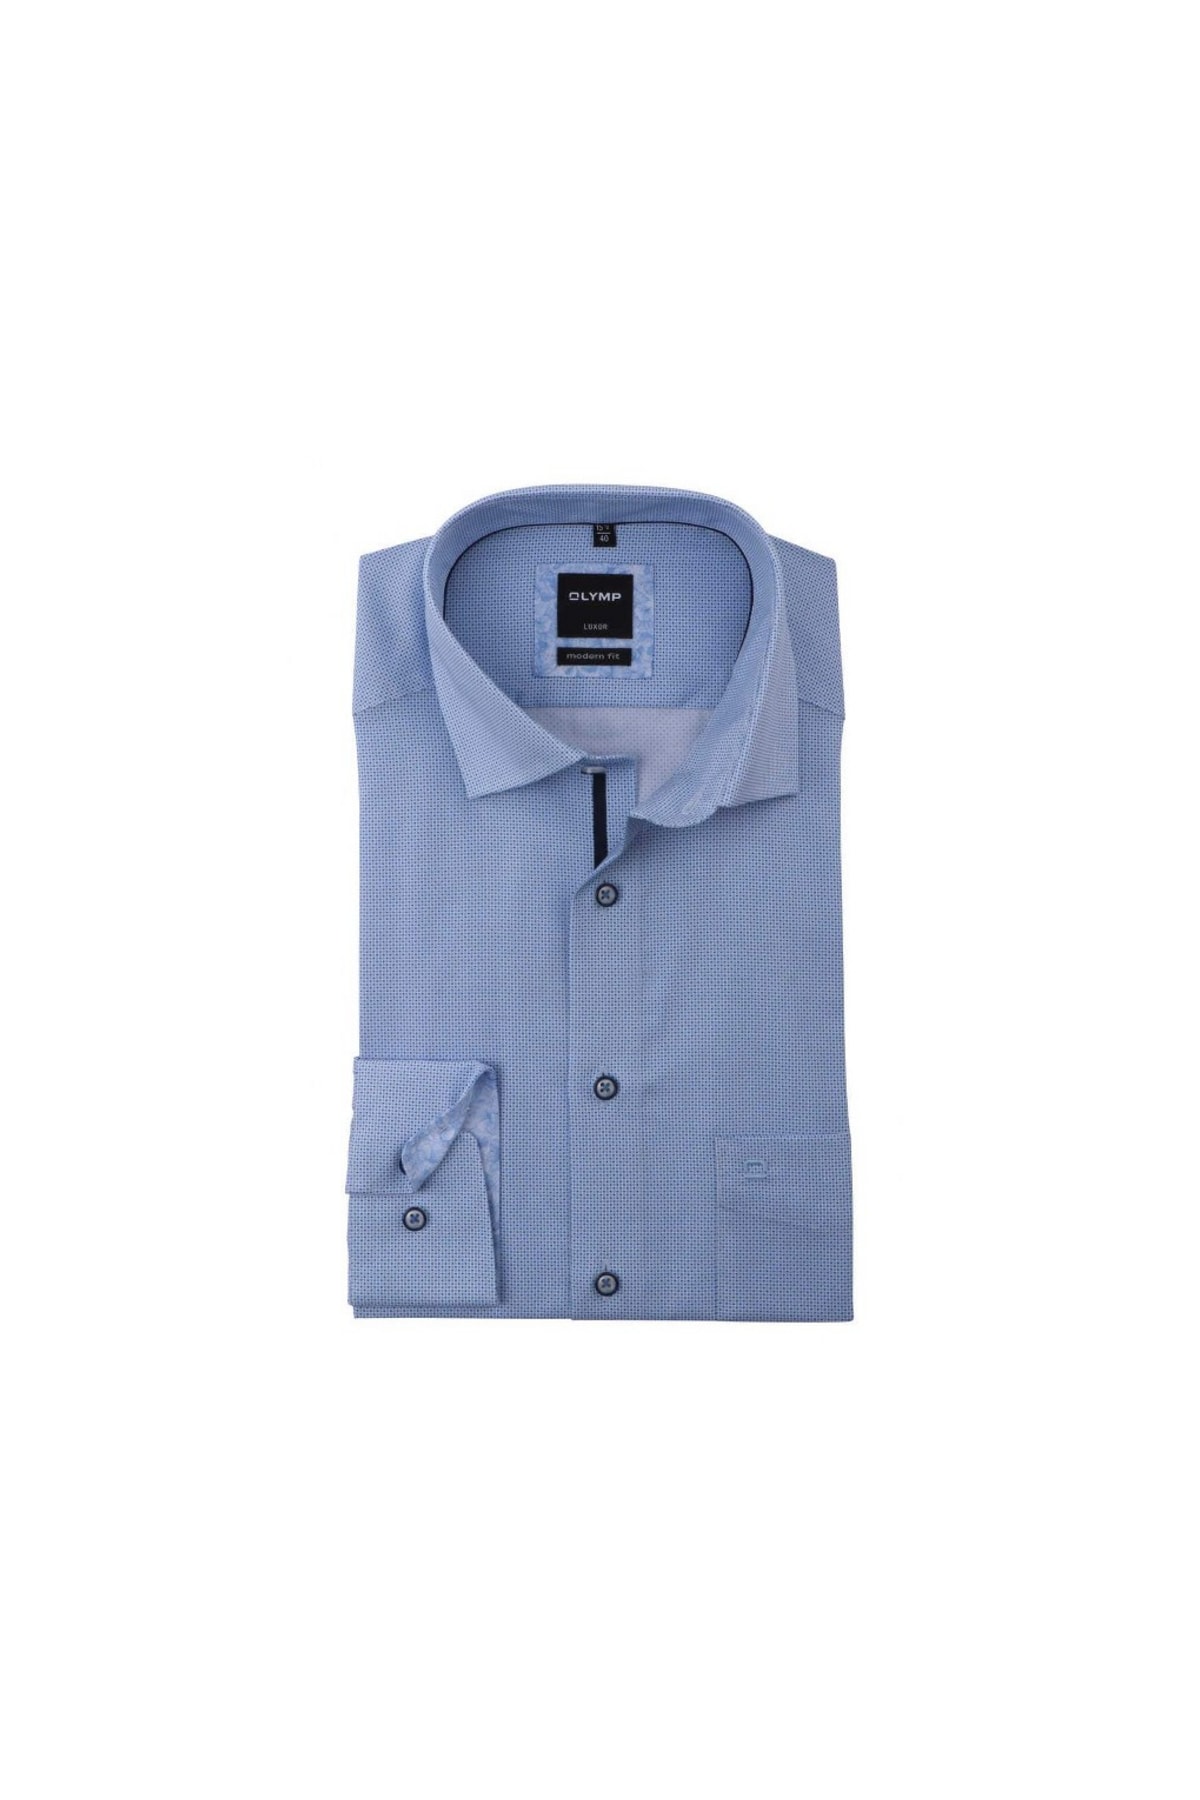 OLYMP Hemd Blau Regular Fit Fast ausverkauft